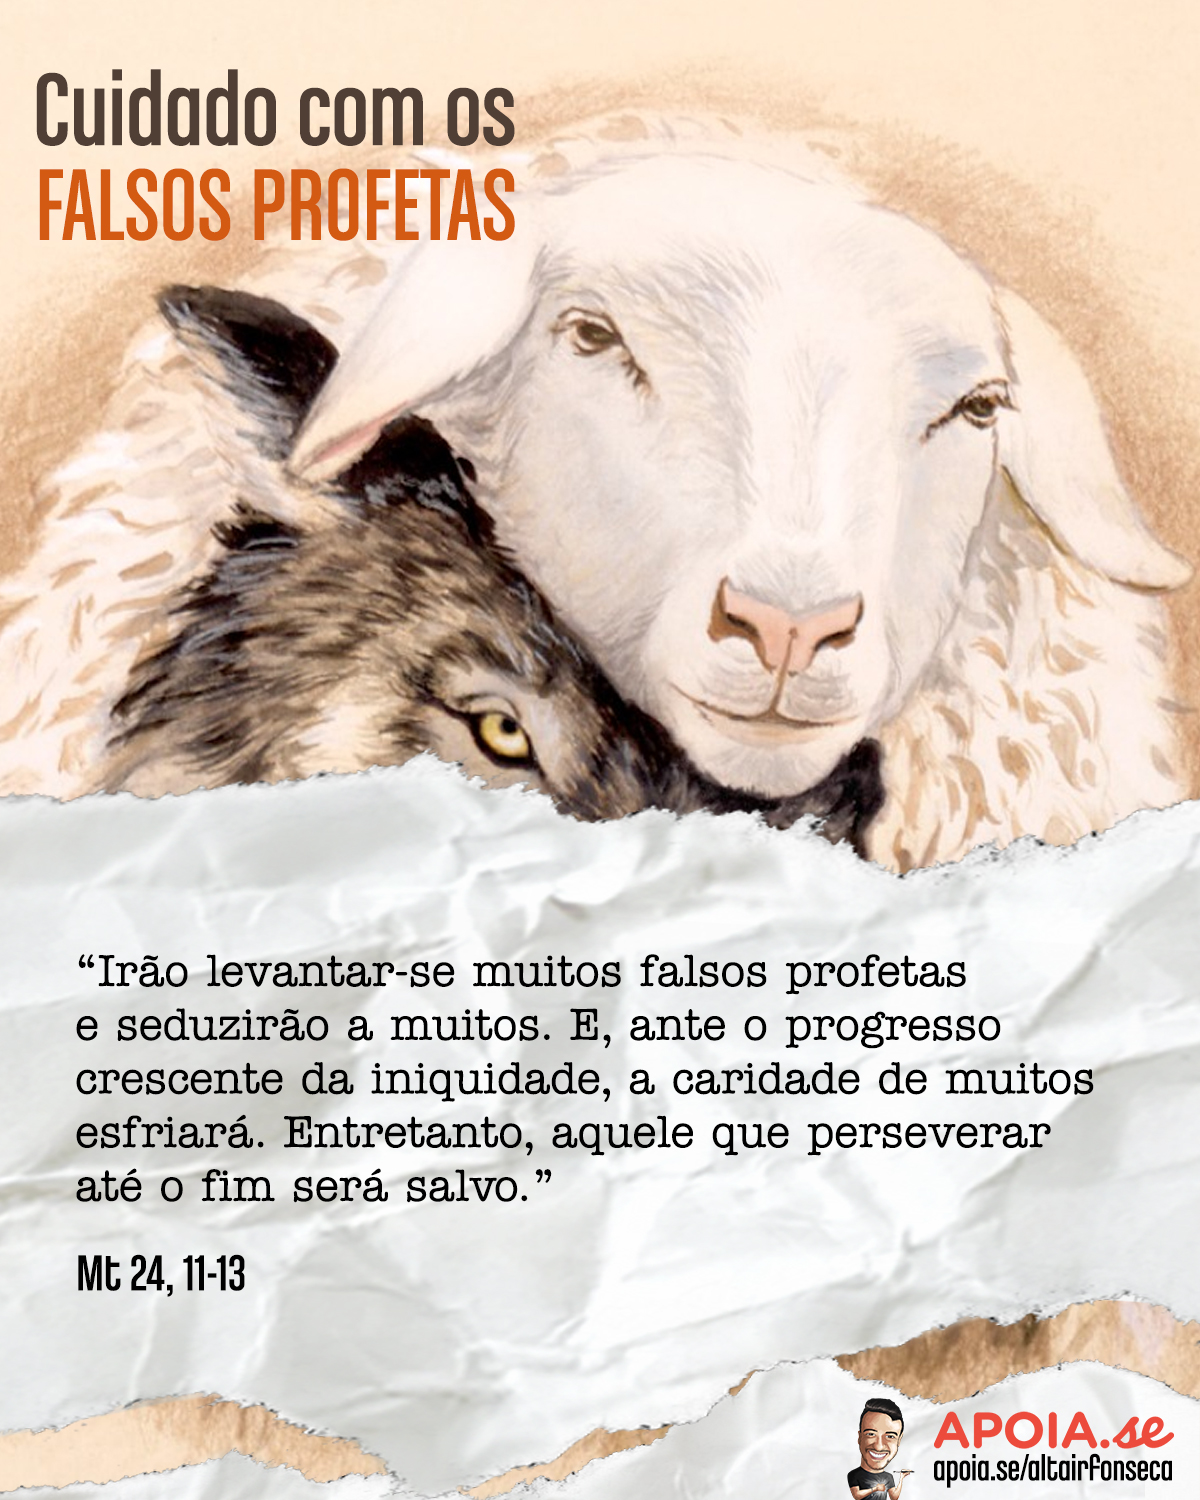 Cuidado com os falsos profetas